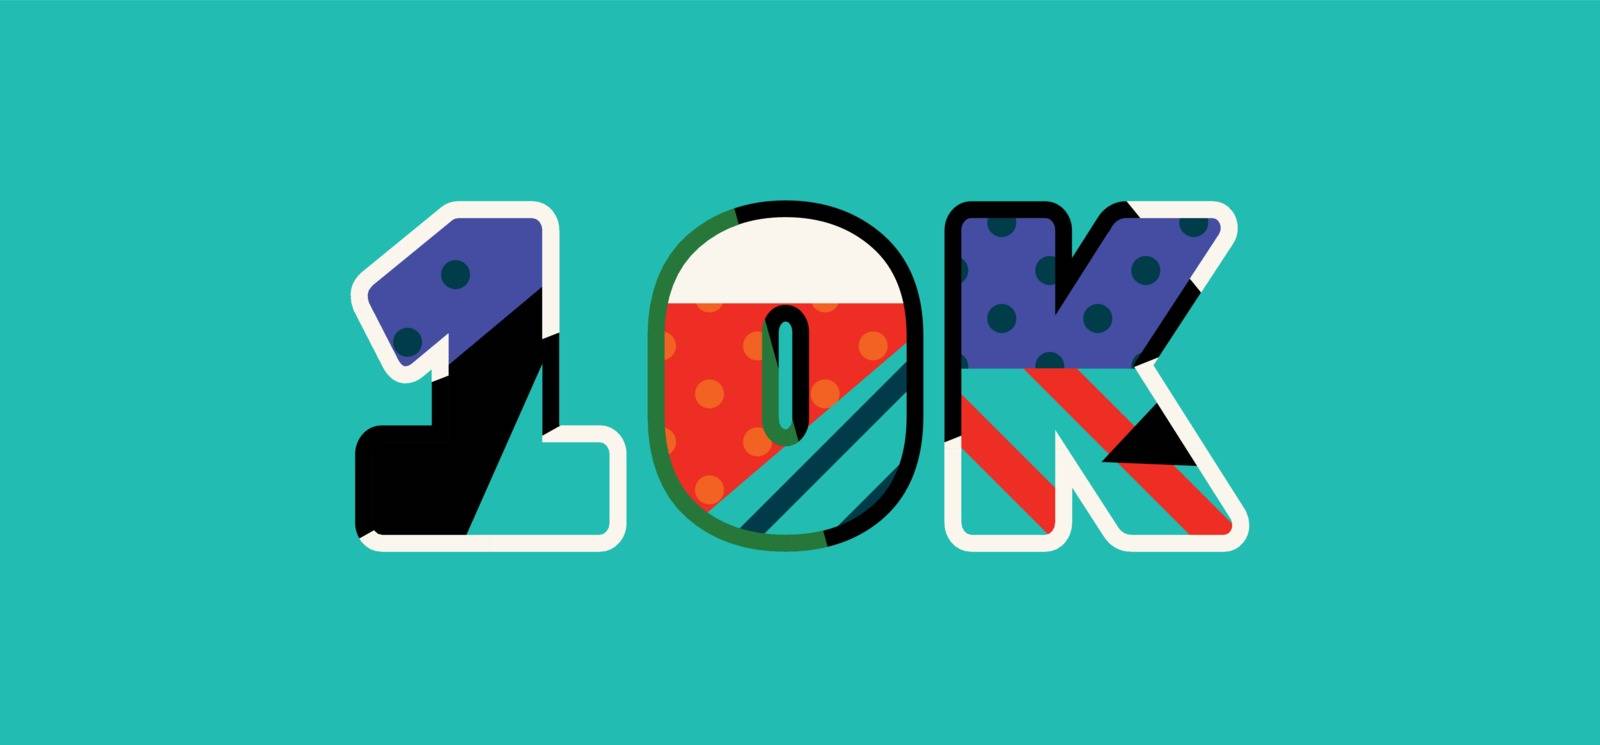 10K Concept Word Art Illustration by enterlinedesign